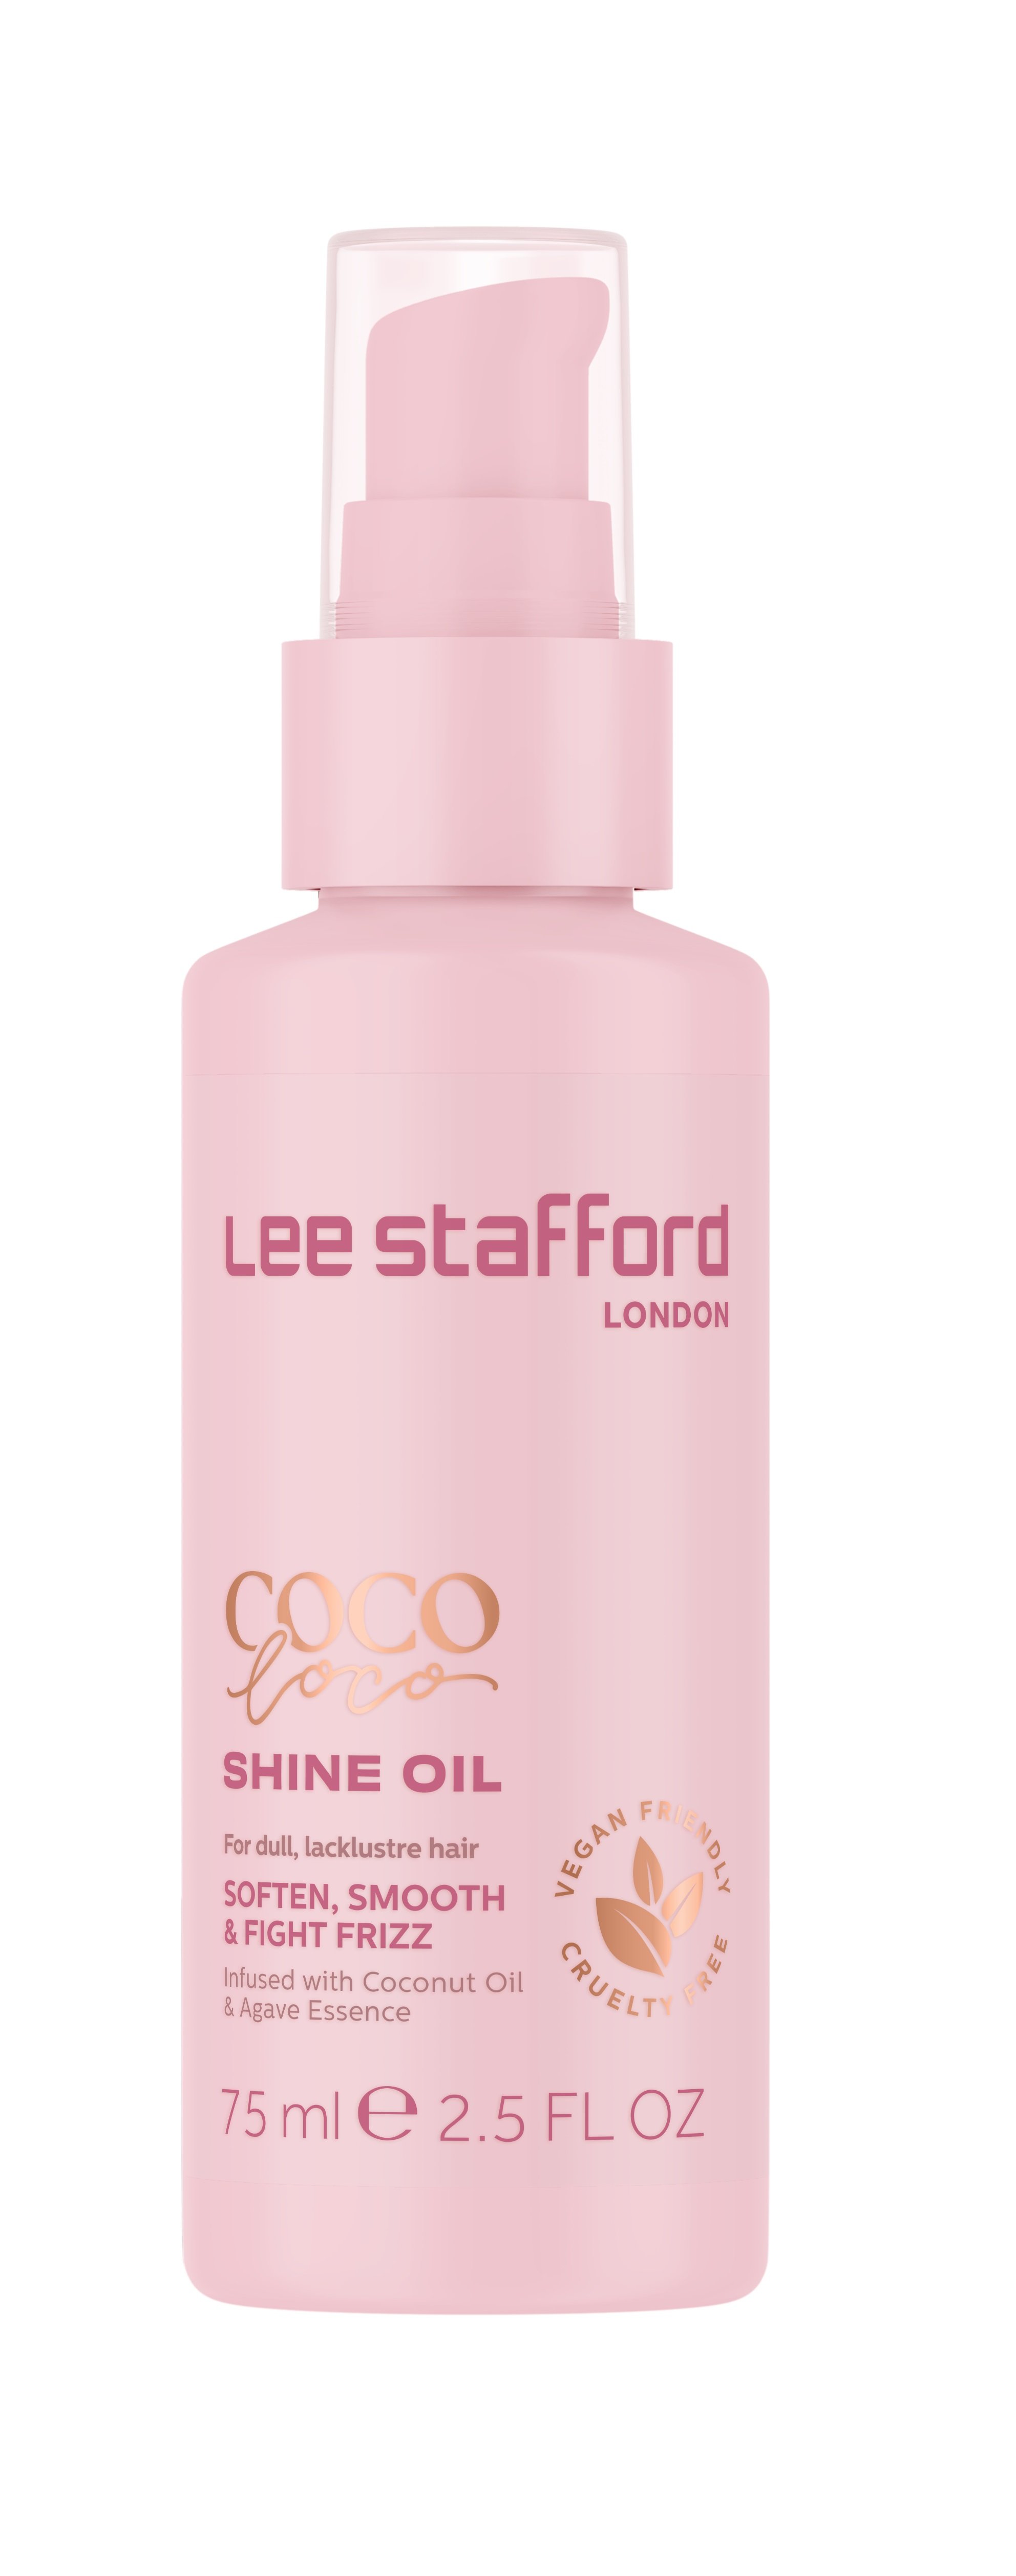 Lee Stafford - Coco Loco Shine Oil 75 ml